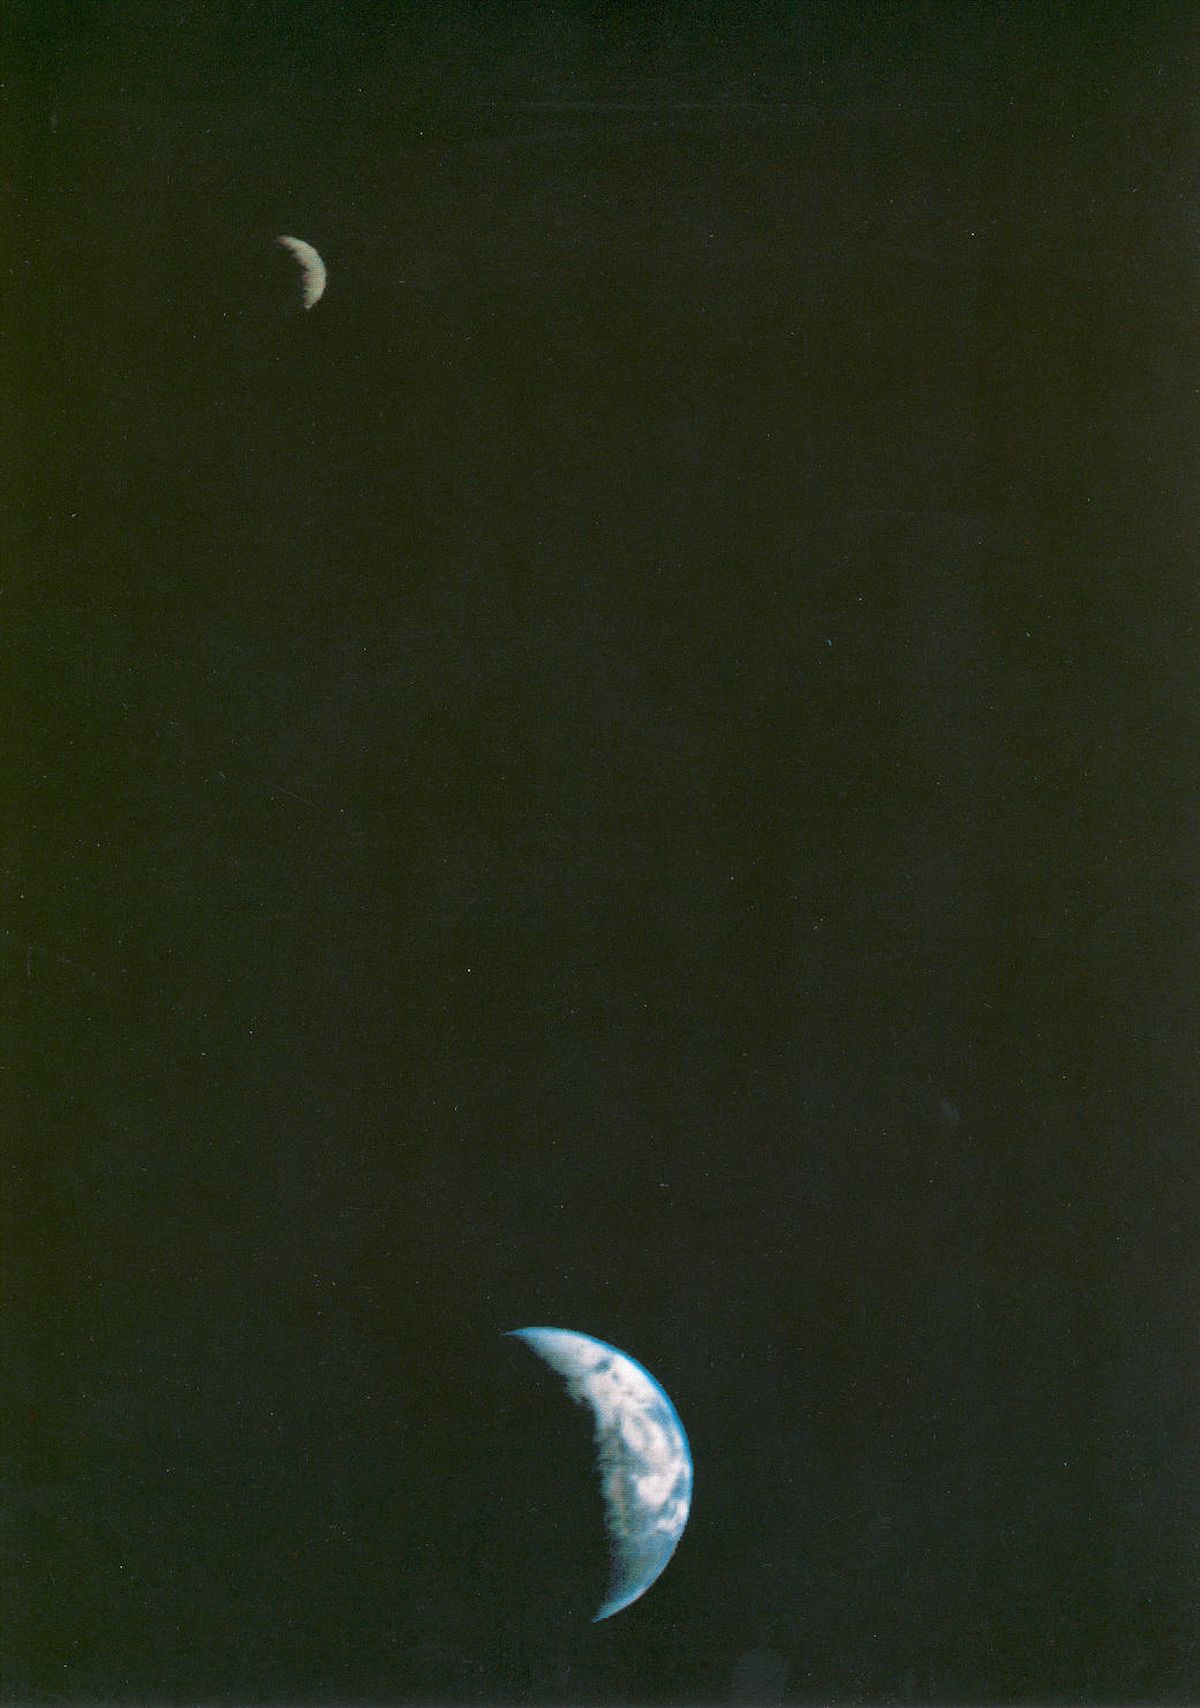 La Voyager 1 tomó esta fotografía desde una distancia de 11,7 millones de kilómetros. Fue la primera en incluir tanto la Tierra como la Luna en una sola imagen tomada por una nave espacial.